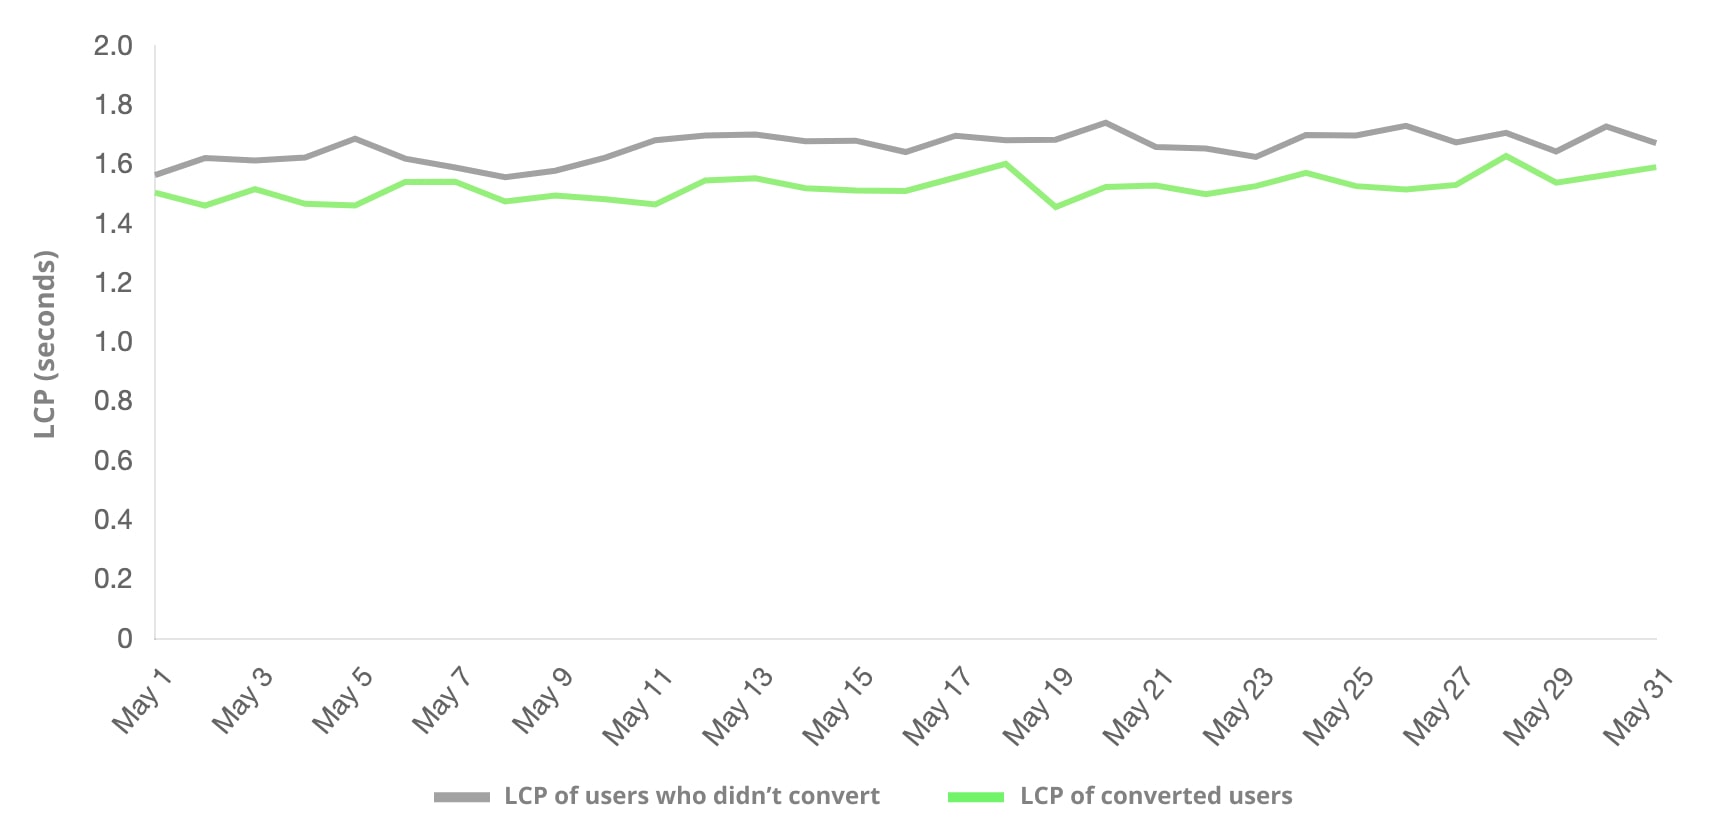 Anhand des LCP-Werts wird die Anzahl der Nutzer mit Conversion im Vergleich zu Nutzern ohne Conversion erfasst. Bei der Nutzergruppe mit häufigeren Conversions war der LCP niedriger.